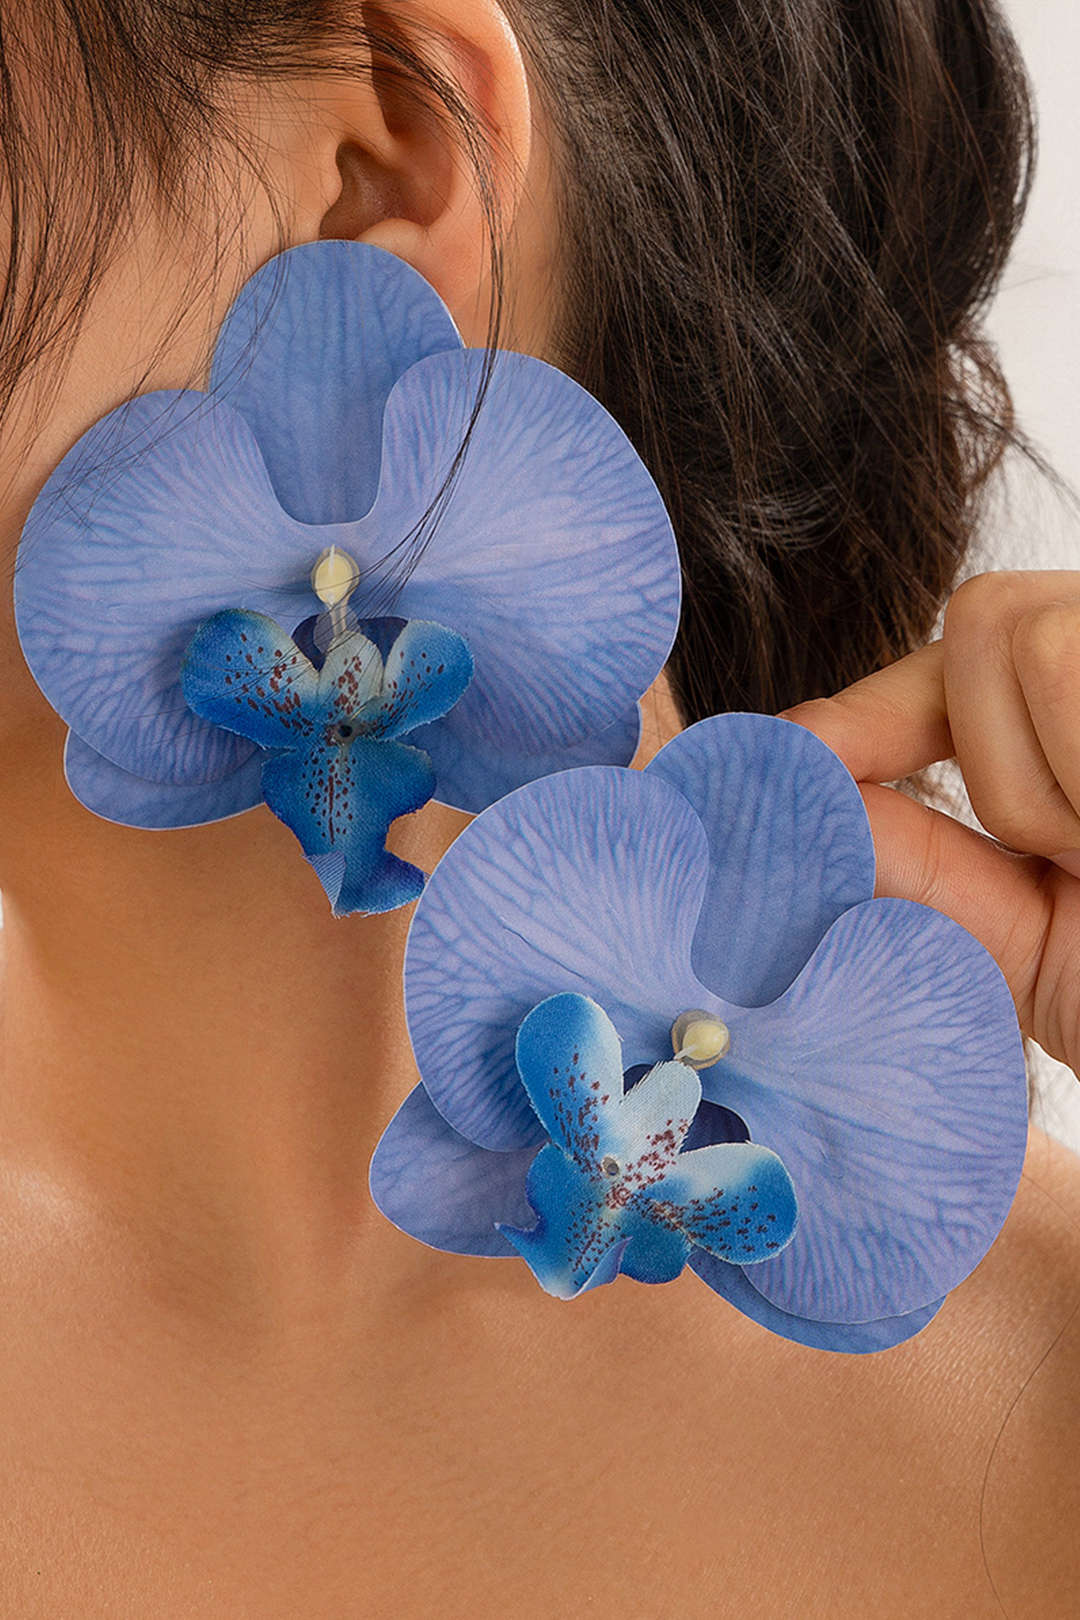 Phalaenopsis Orchid Flower Earrings